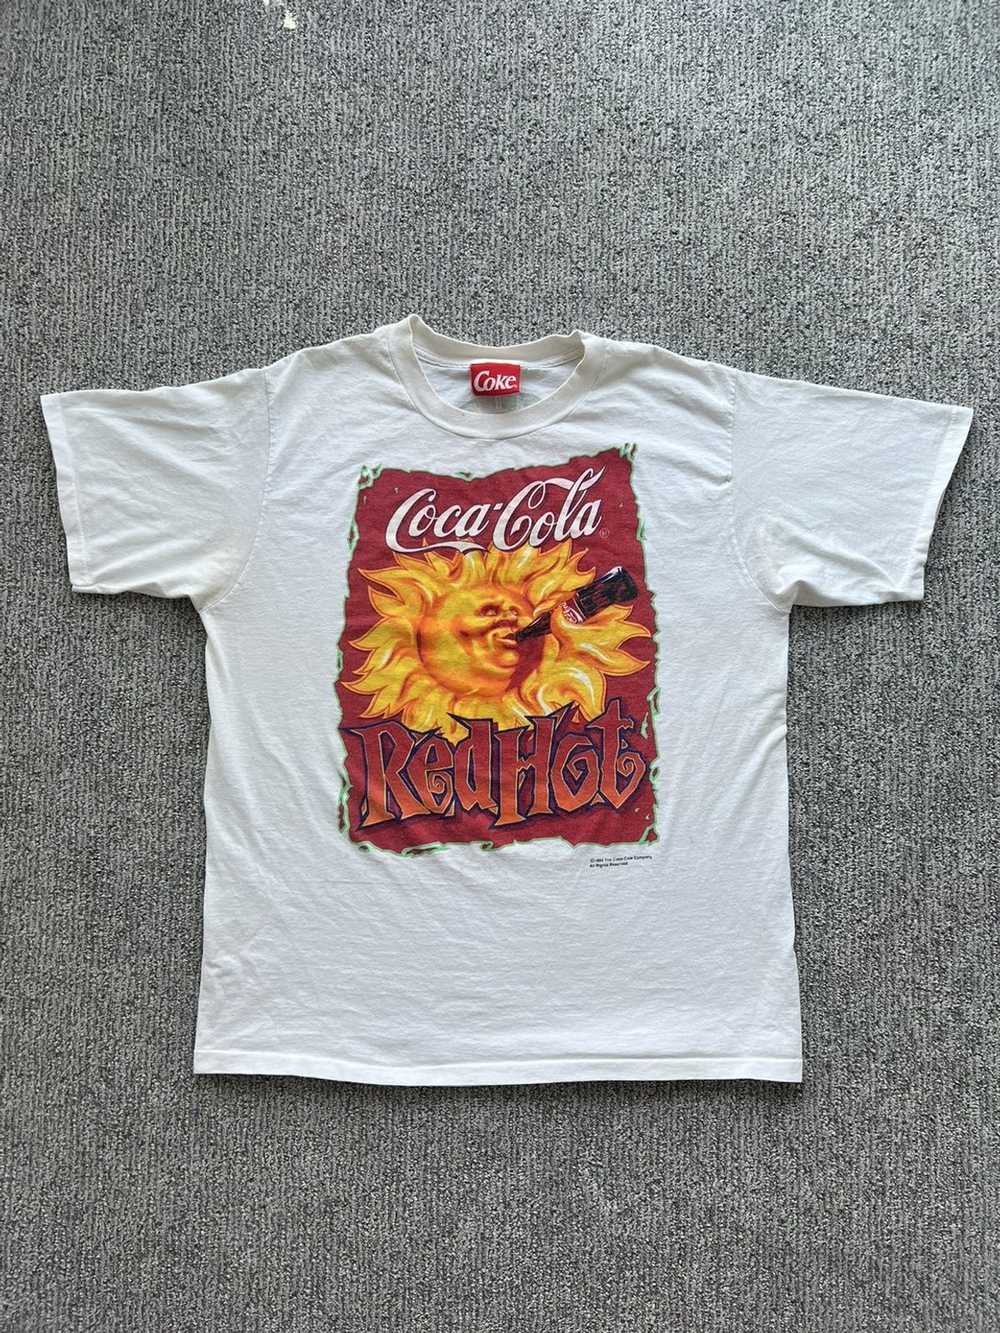 Coca Cola × Vintage Vintage 1994 Red Hot Coca Col… - image 1